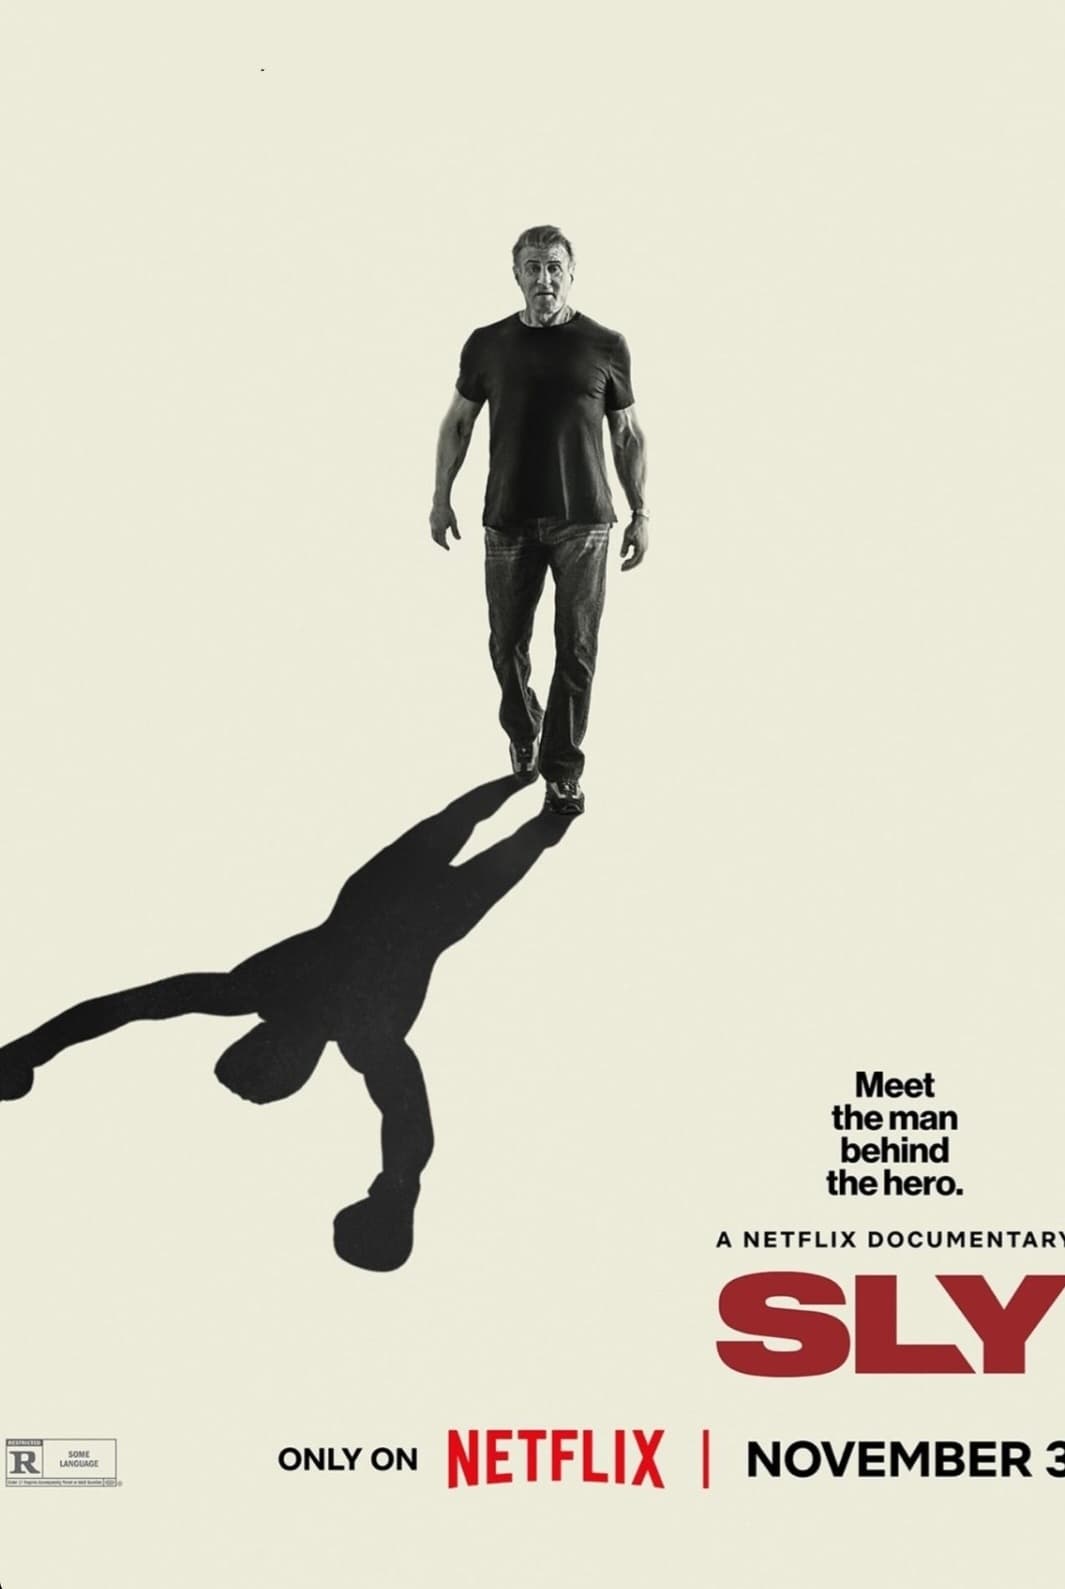 Plakát pro film “Sly”